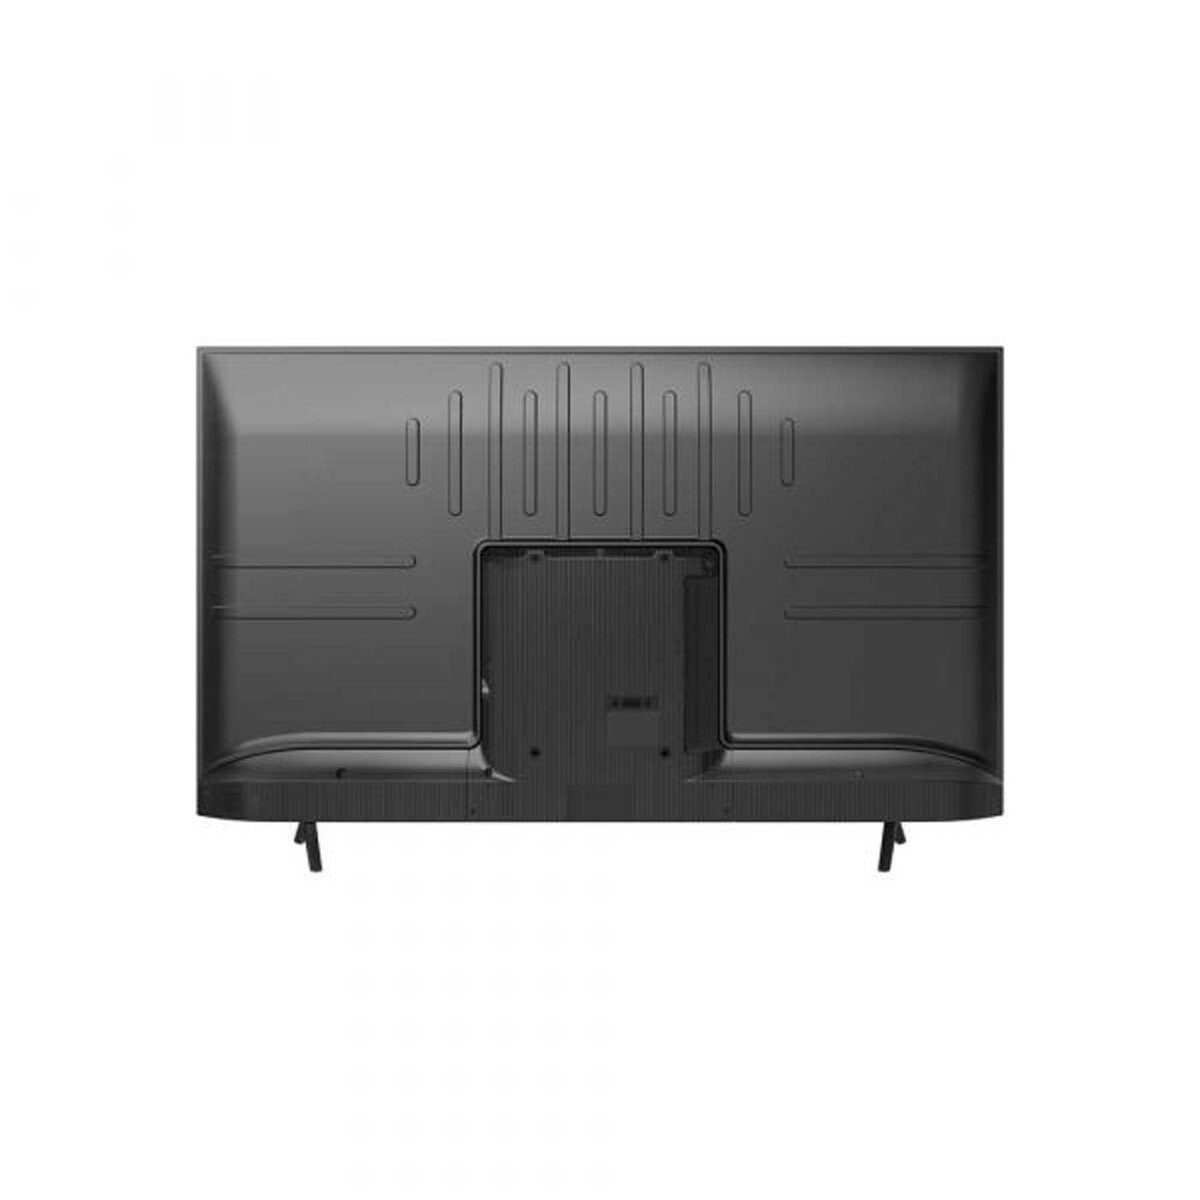 Hisense 55 inches 4K UHD Smart LED TV, Black, 55A61G